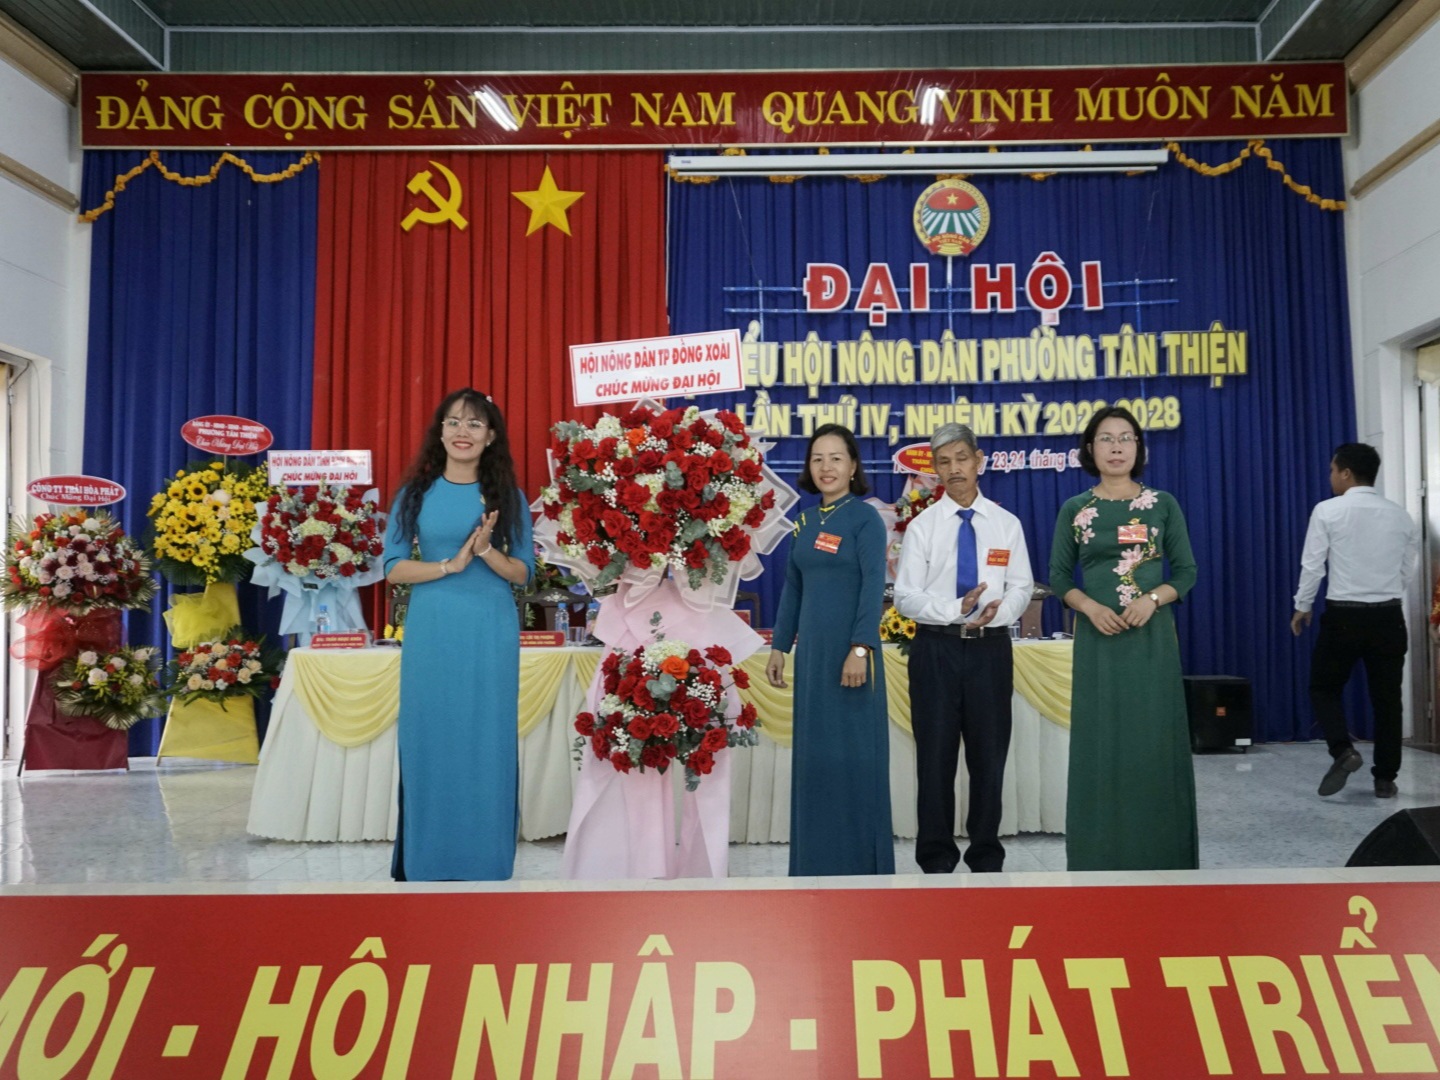 Đồng chí Phạm Thị Yến Linh - Chủ tịch Hội Nông dân thành phố Đồng Xoài tặng hoa chúc mừng Đại hội